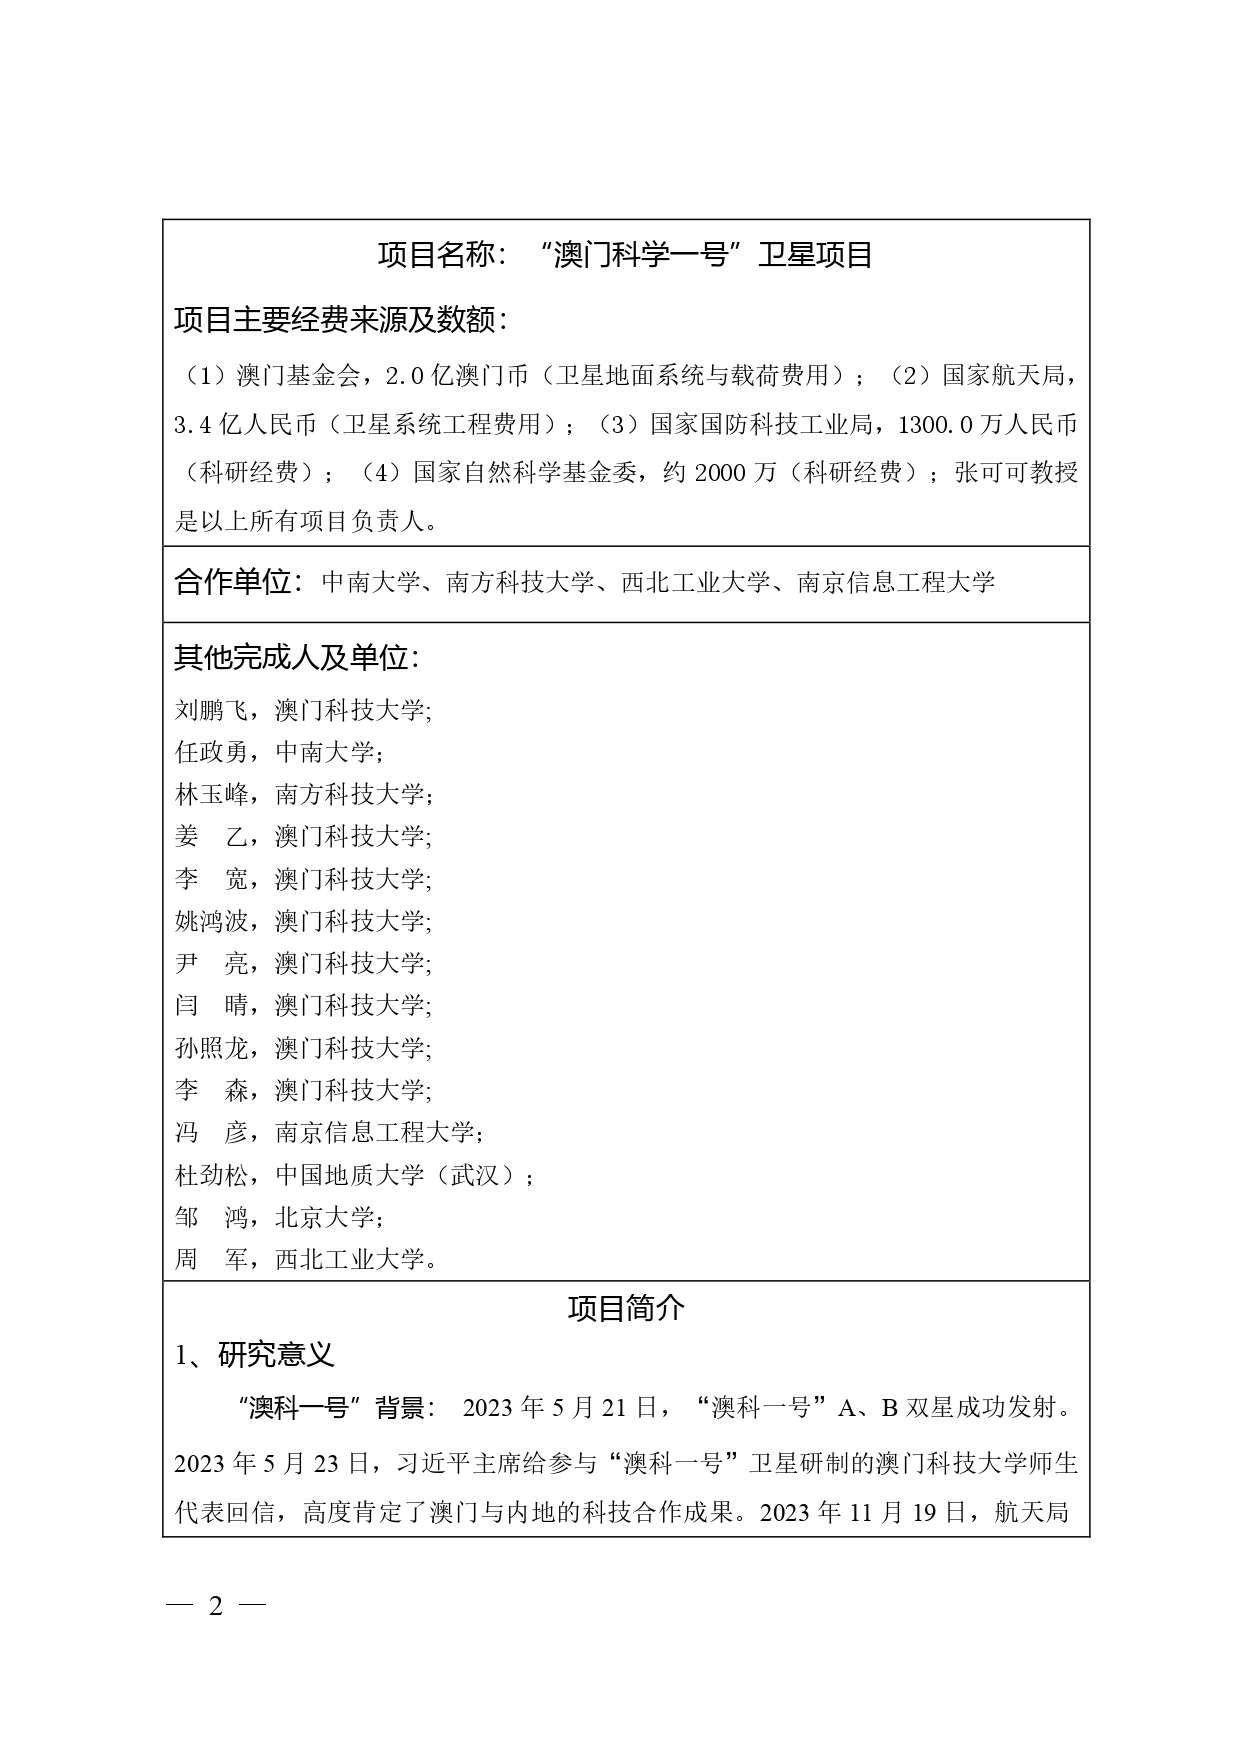 中国高等学校十大科技进展申报表 张可可终版3 page 0002